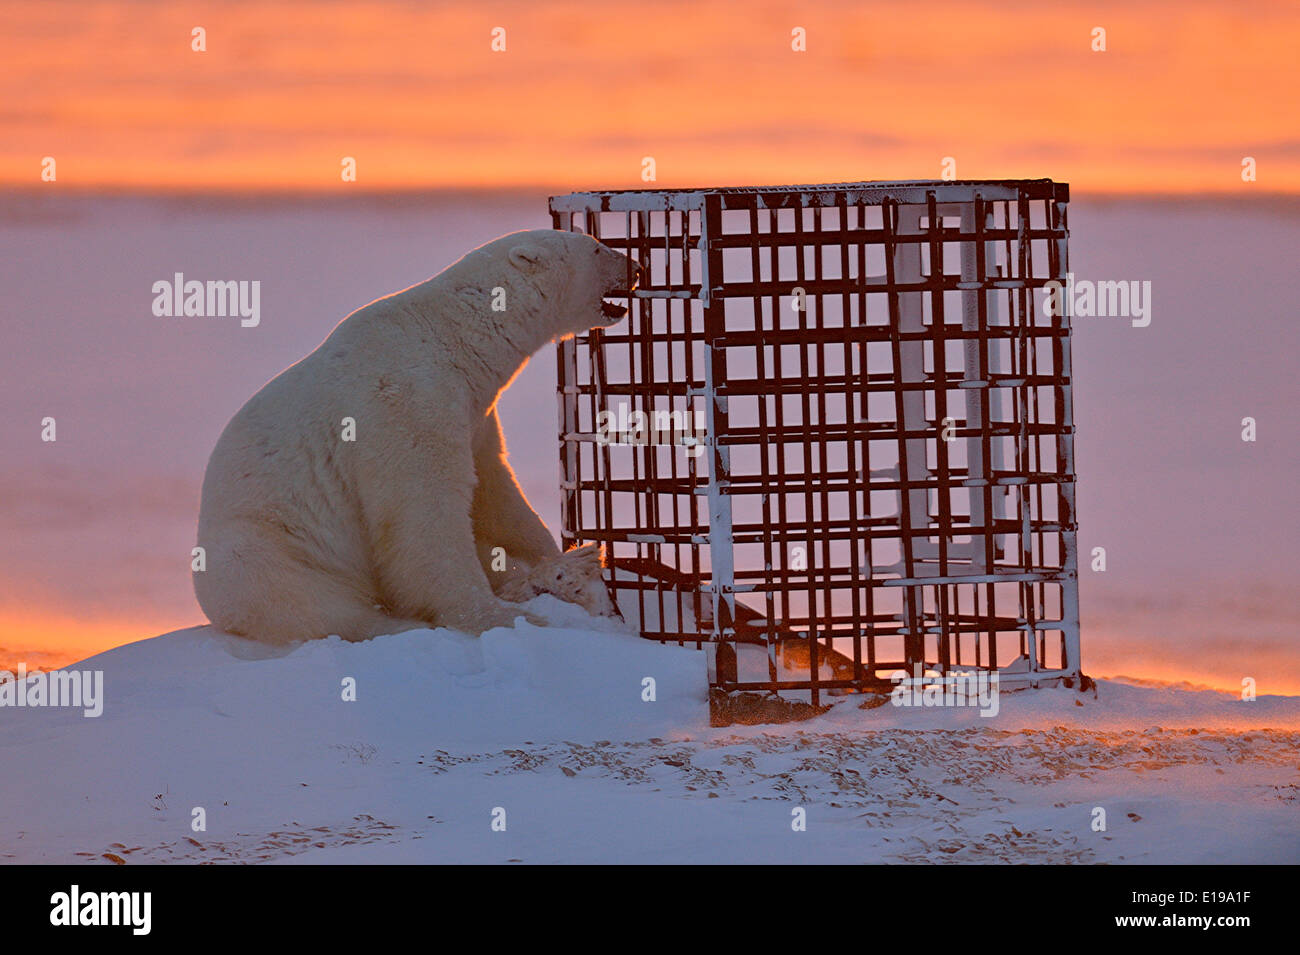 Eisbär (Ursus maritimus) Neugierig untersucht eine von Menschen geschaffene Struktur Wapusk National Park, Cape Churchill Manitoba Kanada Stockfoto